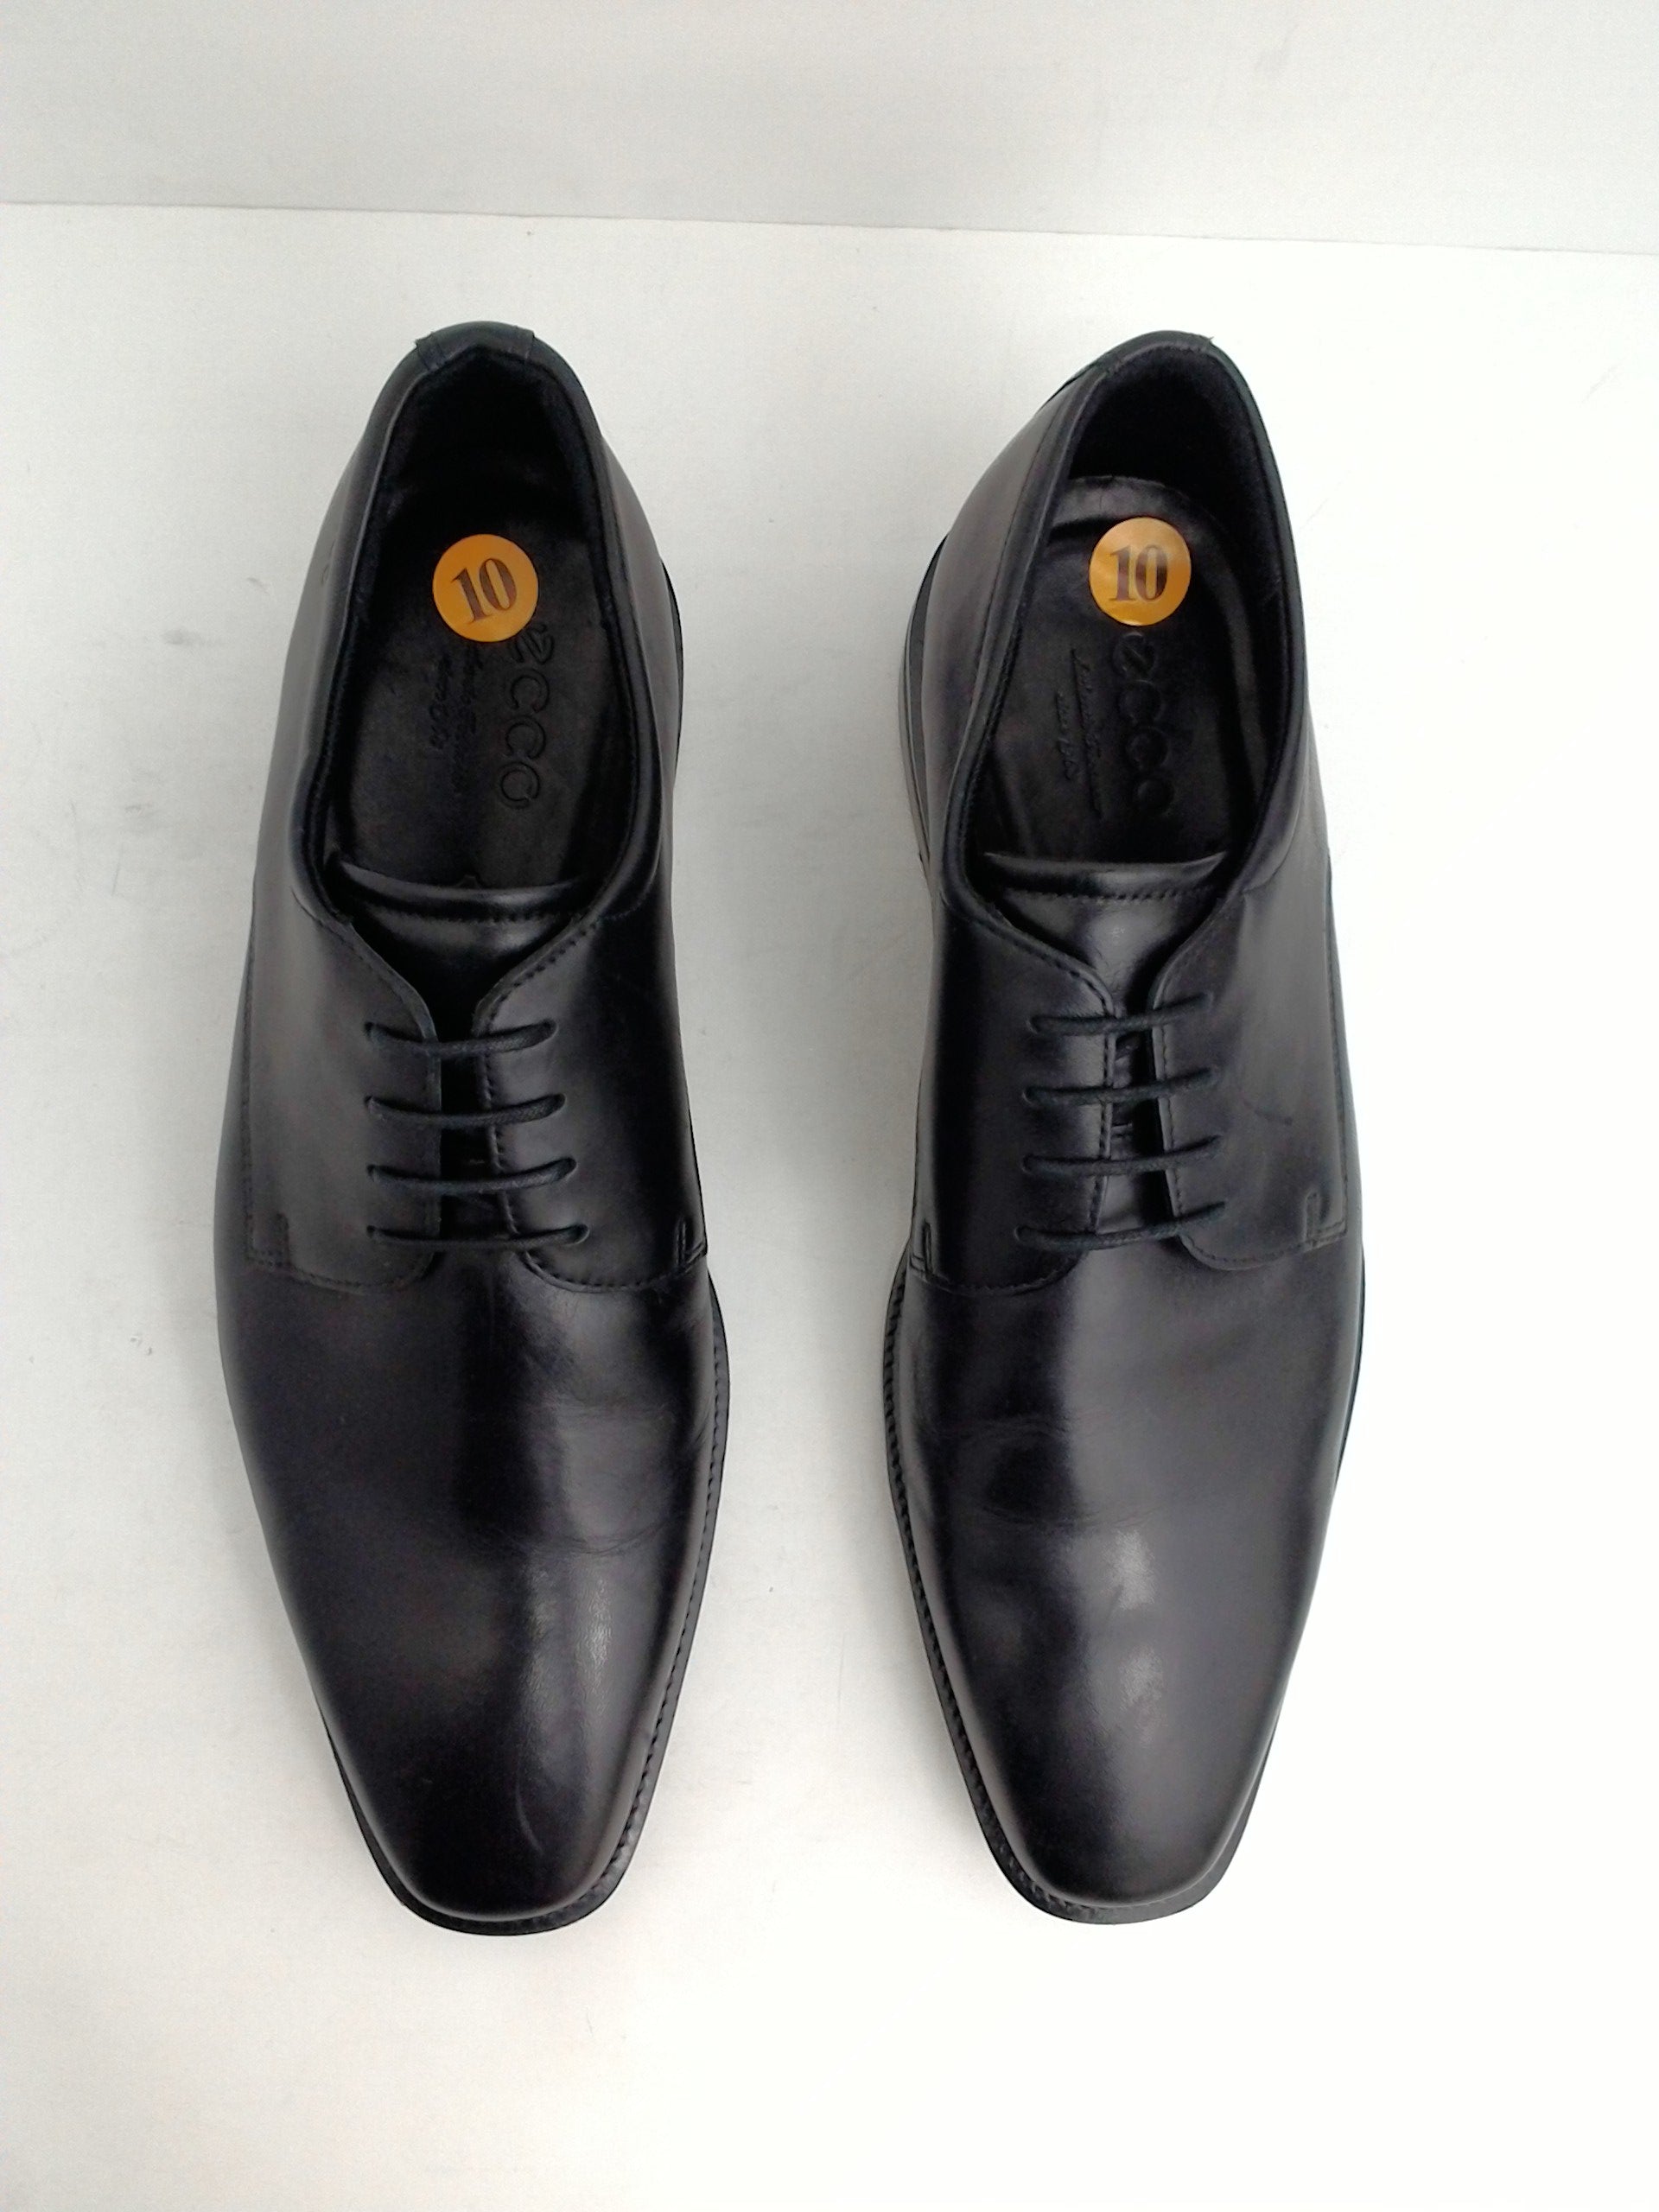 Ecco Men's Oxfords, Dress Shoes, Black, Leather, Size 10 M - Prime ...